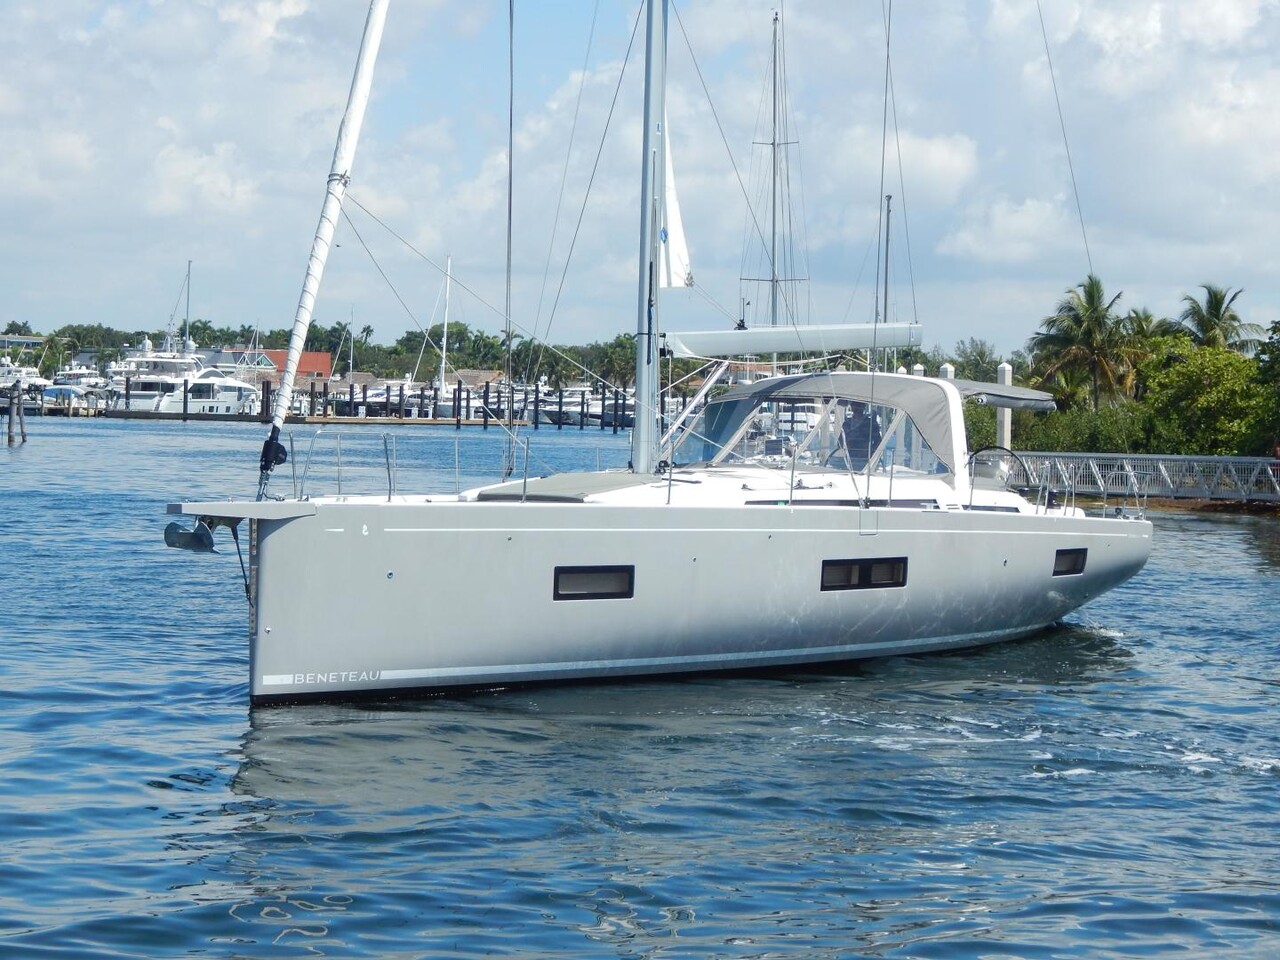 Bénéteau Océanis Yacht 54 (sailboat) for sale